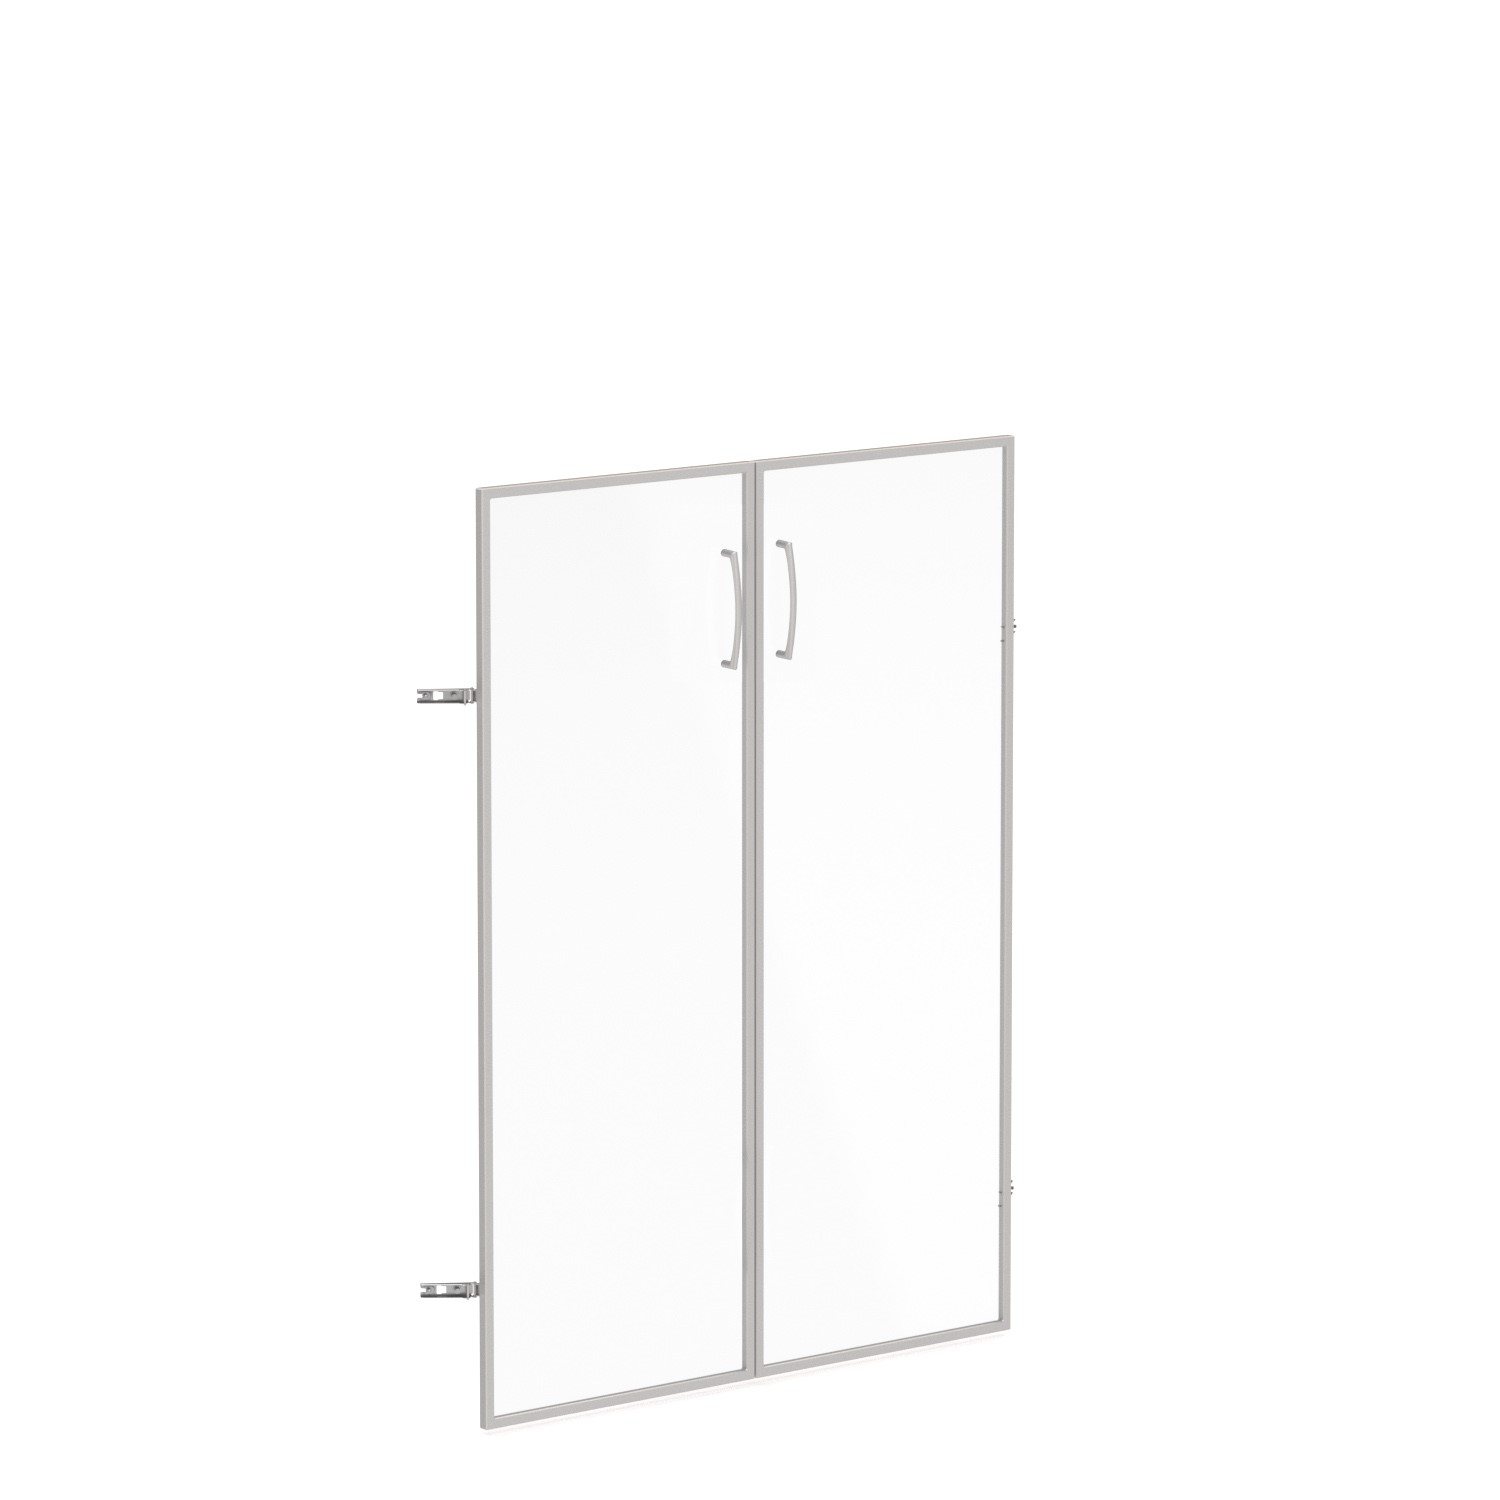 Skleněné dveře v AL rámu, výška 105,2cm, šířka 78,6/118,6cm